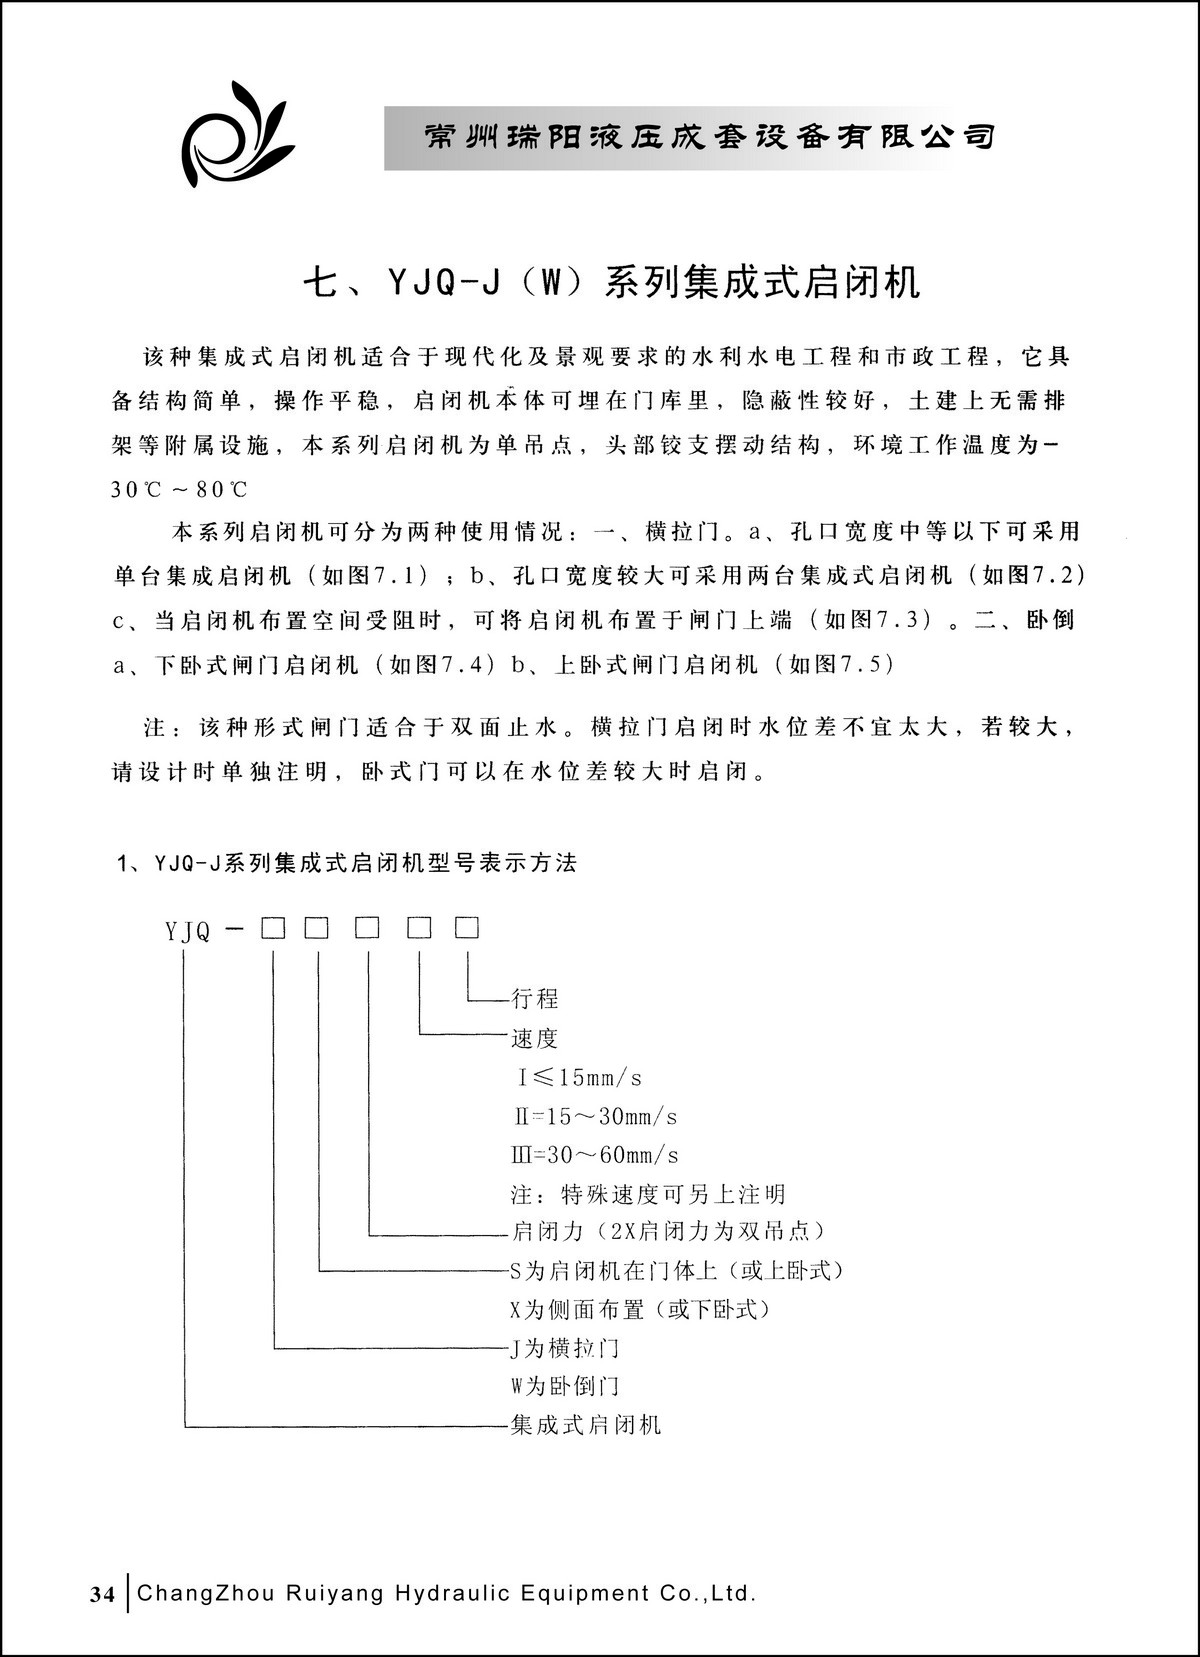 常州瑞阳液压成套设备有限公司产品样本2_页面_34.JPG